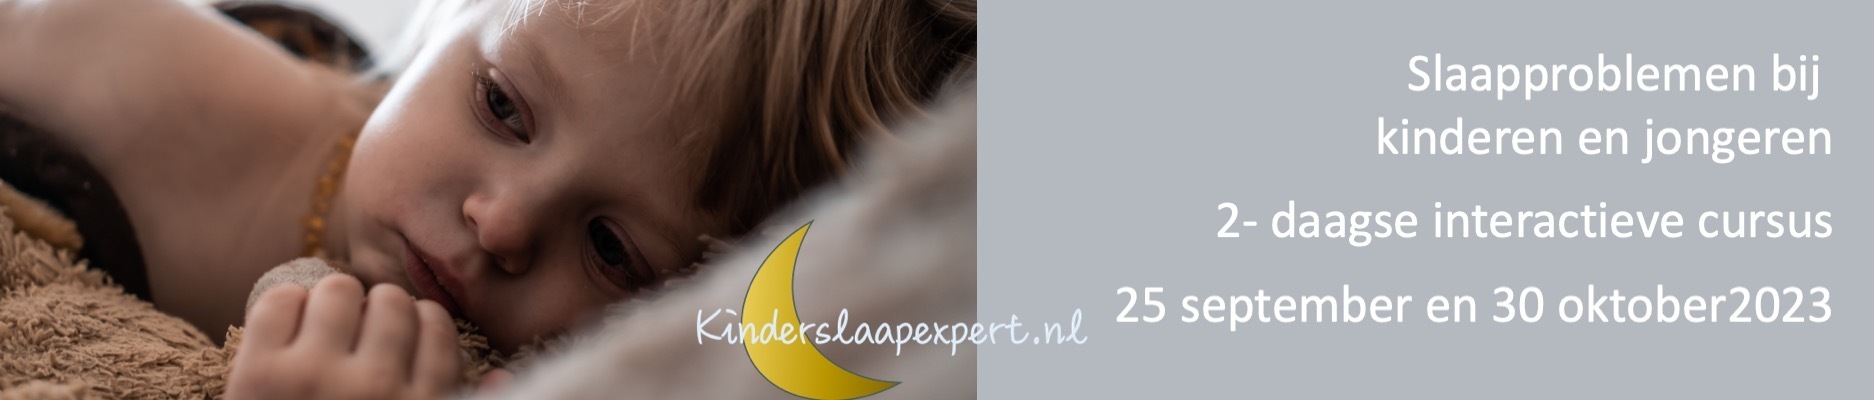 Slaapproblemen bij kinderen en jongeren - 2-daage interactievecursus voor zorgprofessionals najaar 2023